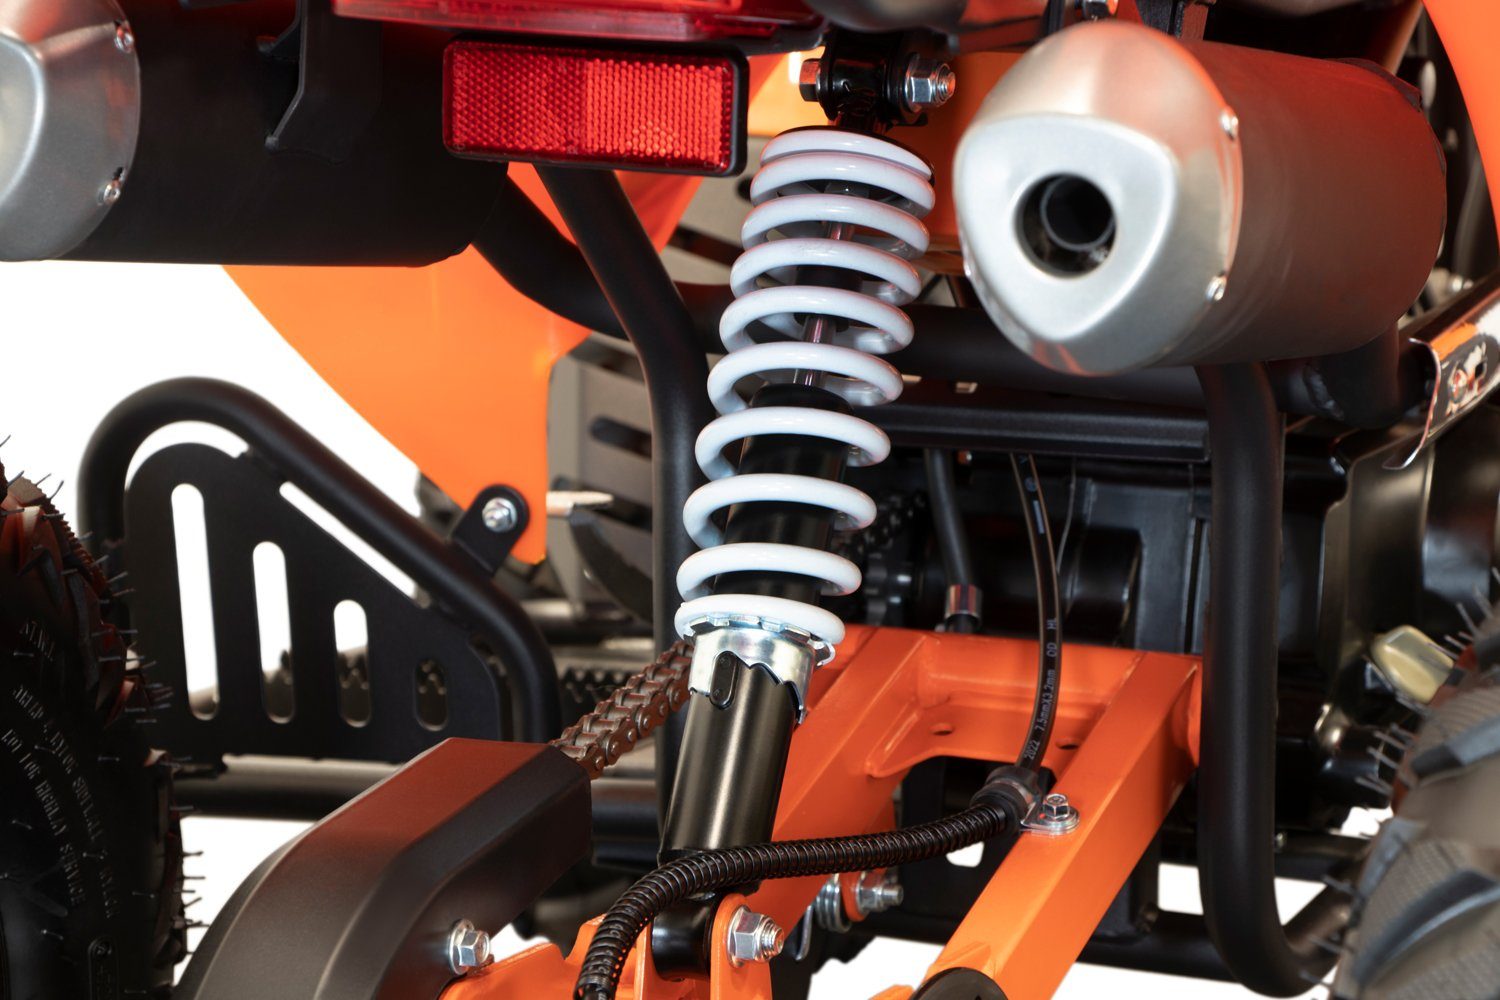 Quad 125cc Warrior Motors | Midiquad, Kinder Automatik ATV GS Kinderquad Orange ccm midi Nitro Quad 125,00